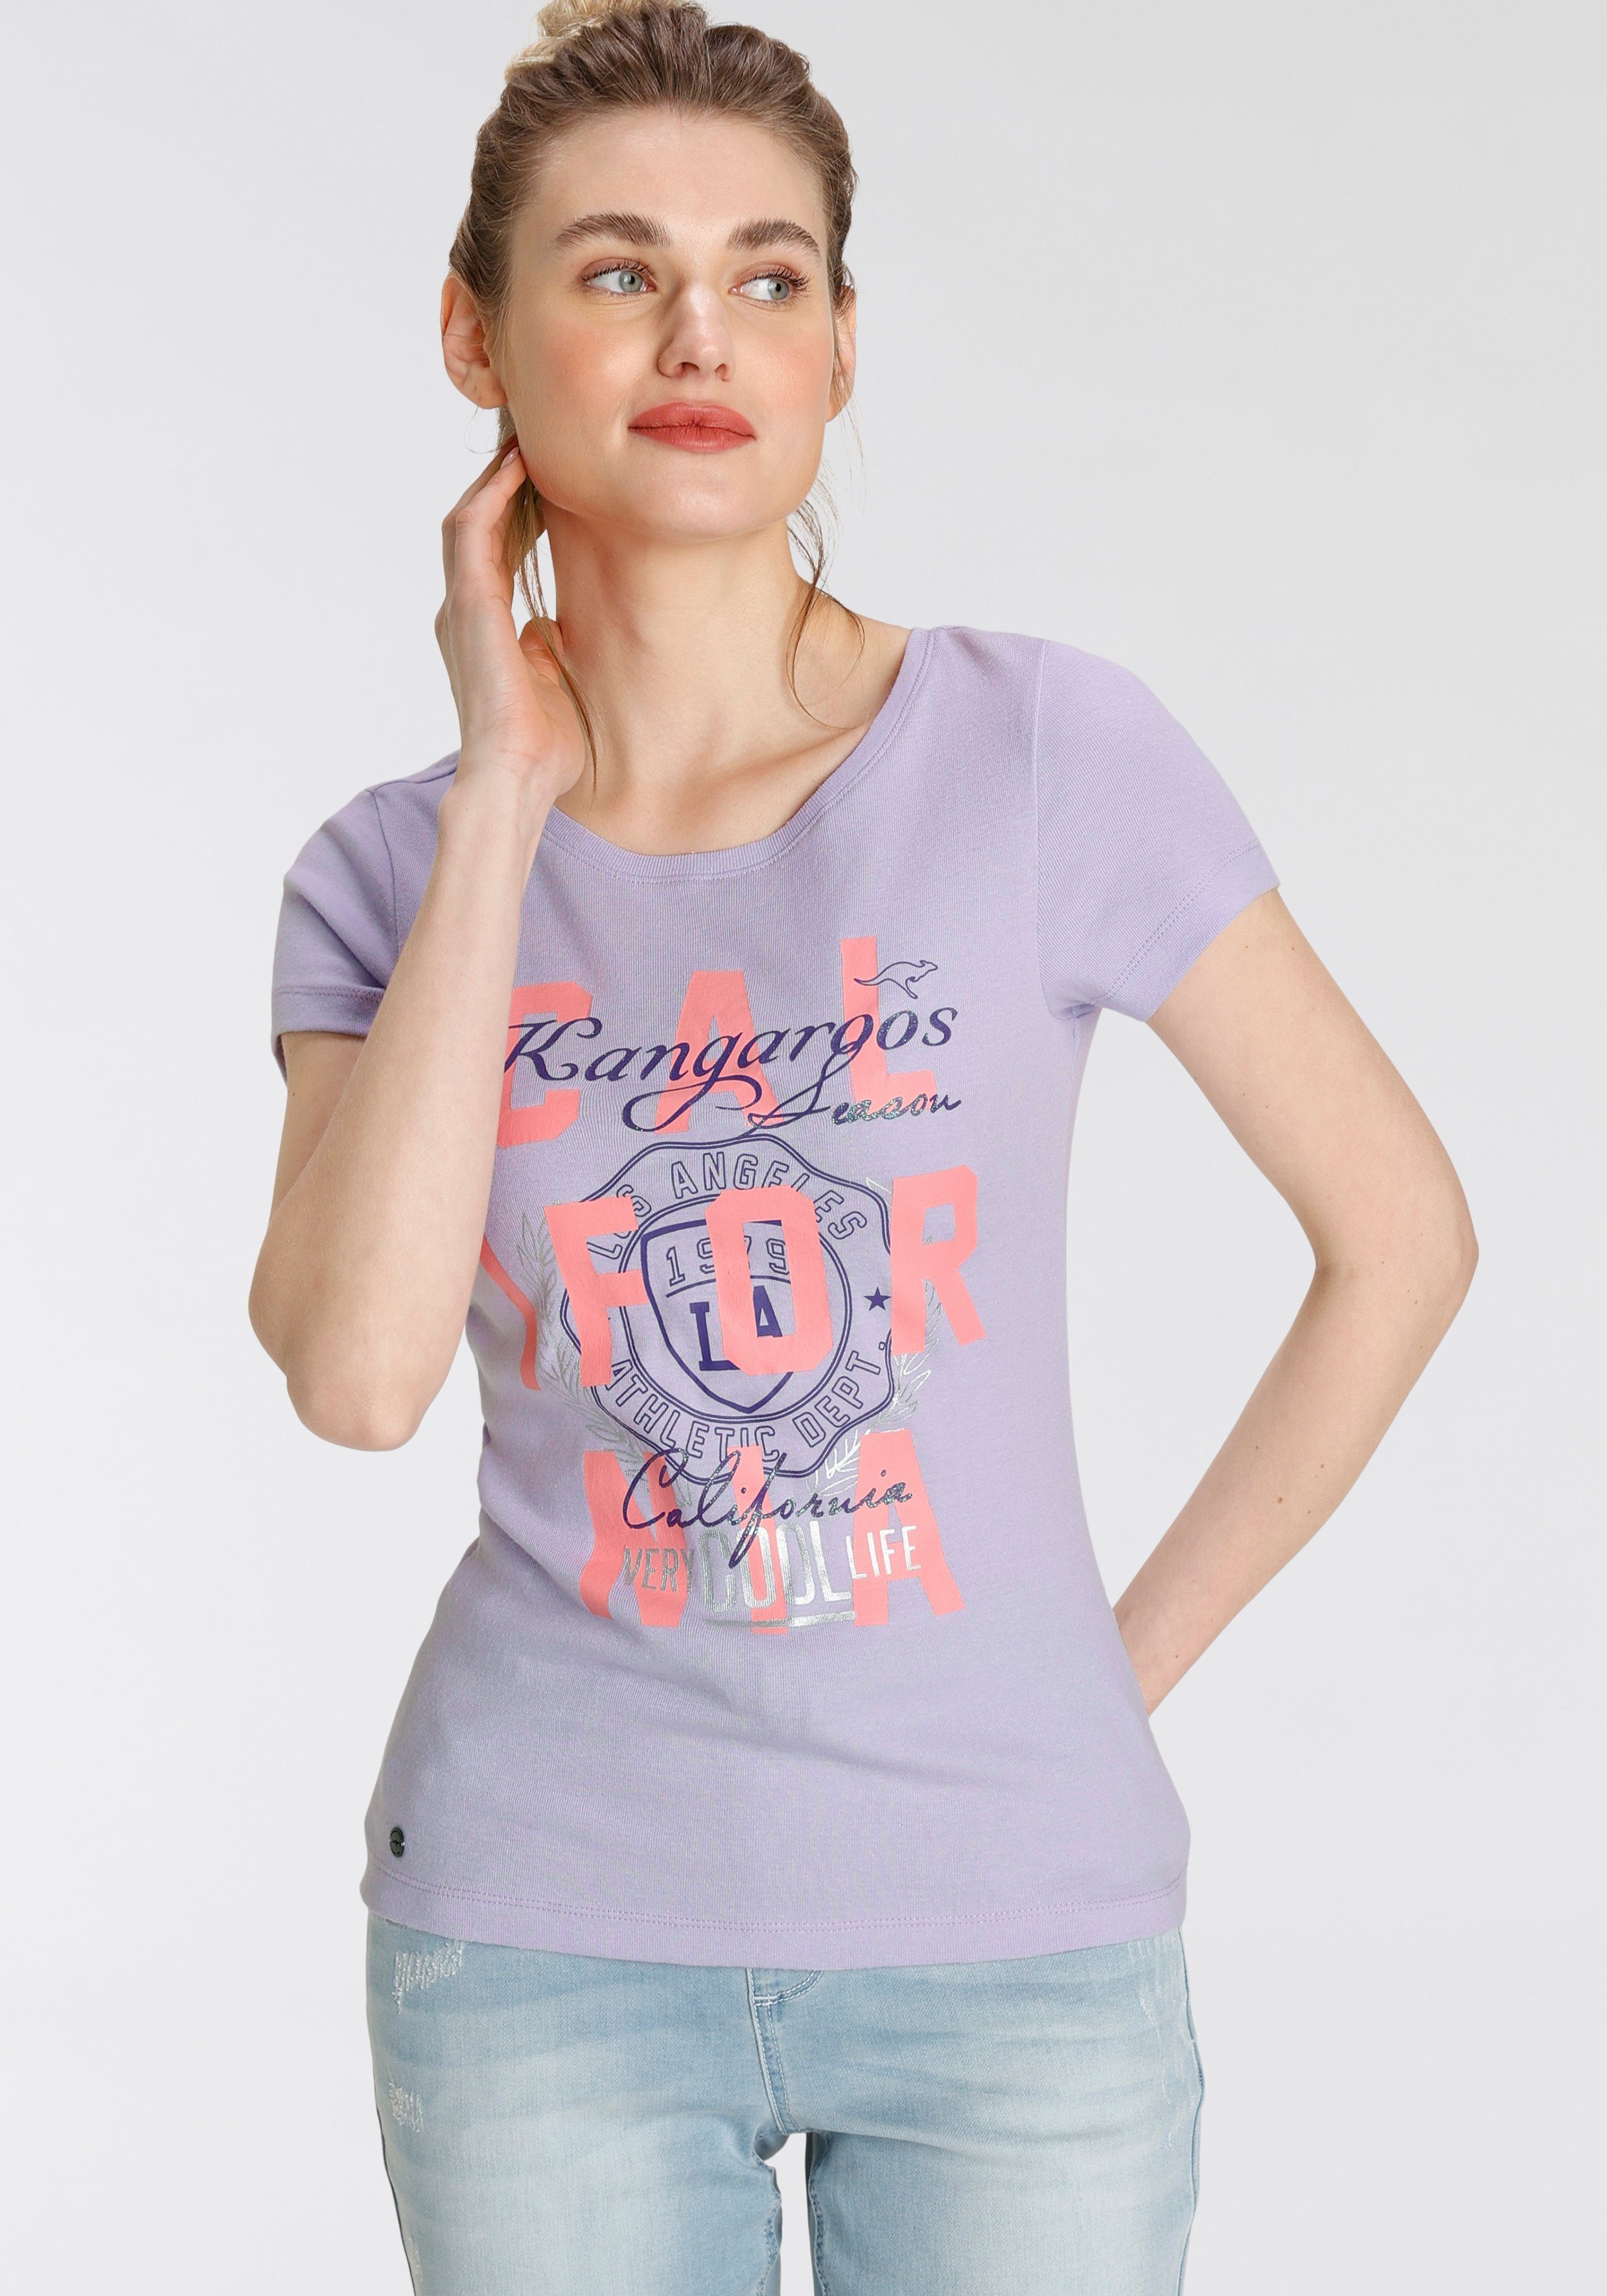 mit im - NEUE KangaROOS Print-Shirt Logodruck California-Style KOLLEKTION